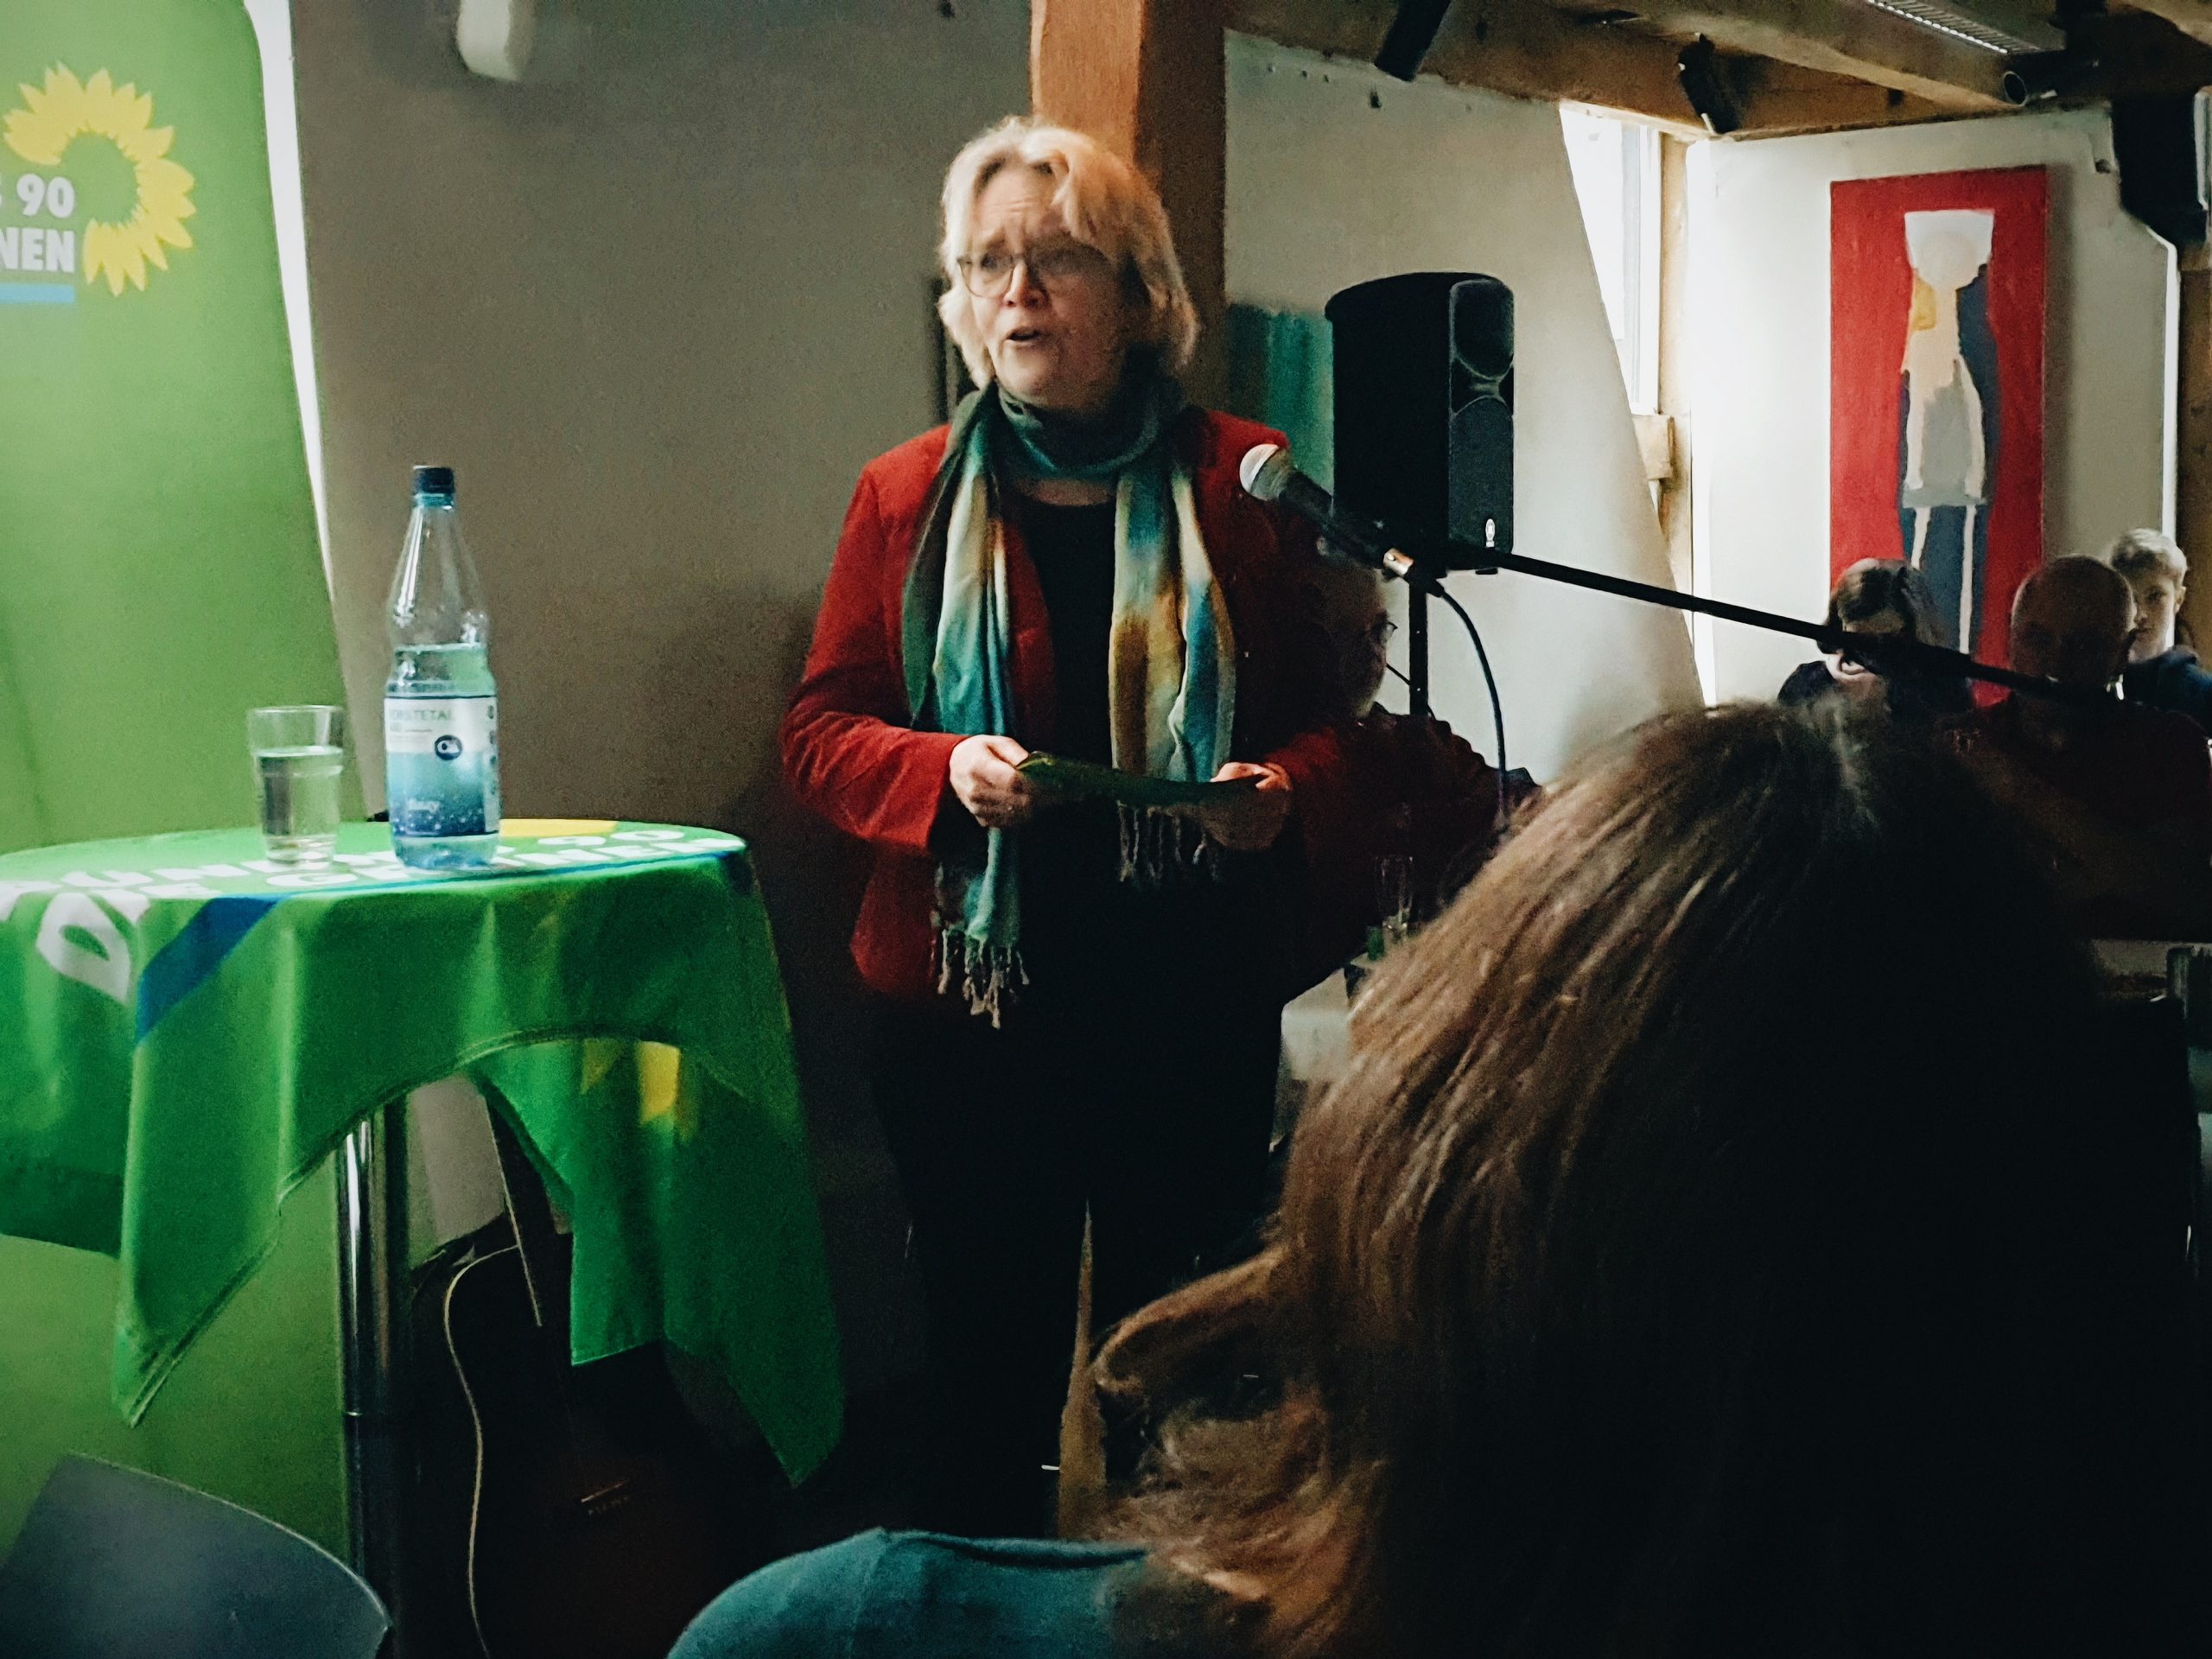 Bürgermeisterin-Kandidatin Katharina Kleine Vennekate beim Neujahrsempfang der Grünen Lemgo 2020